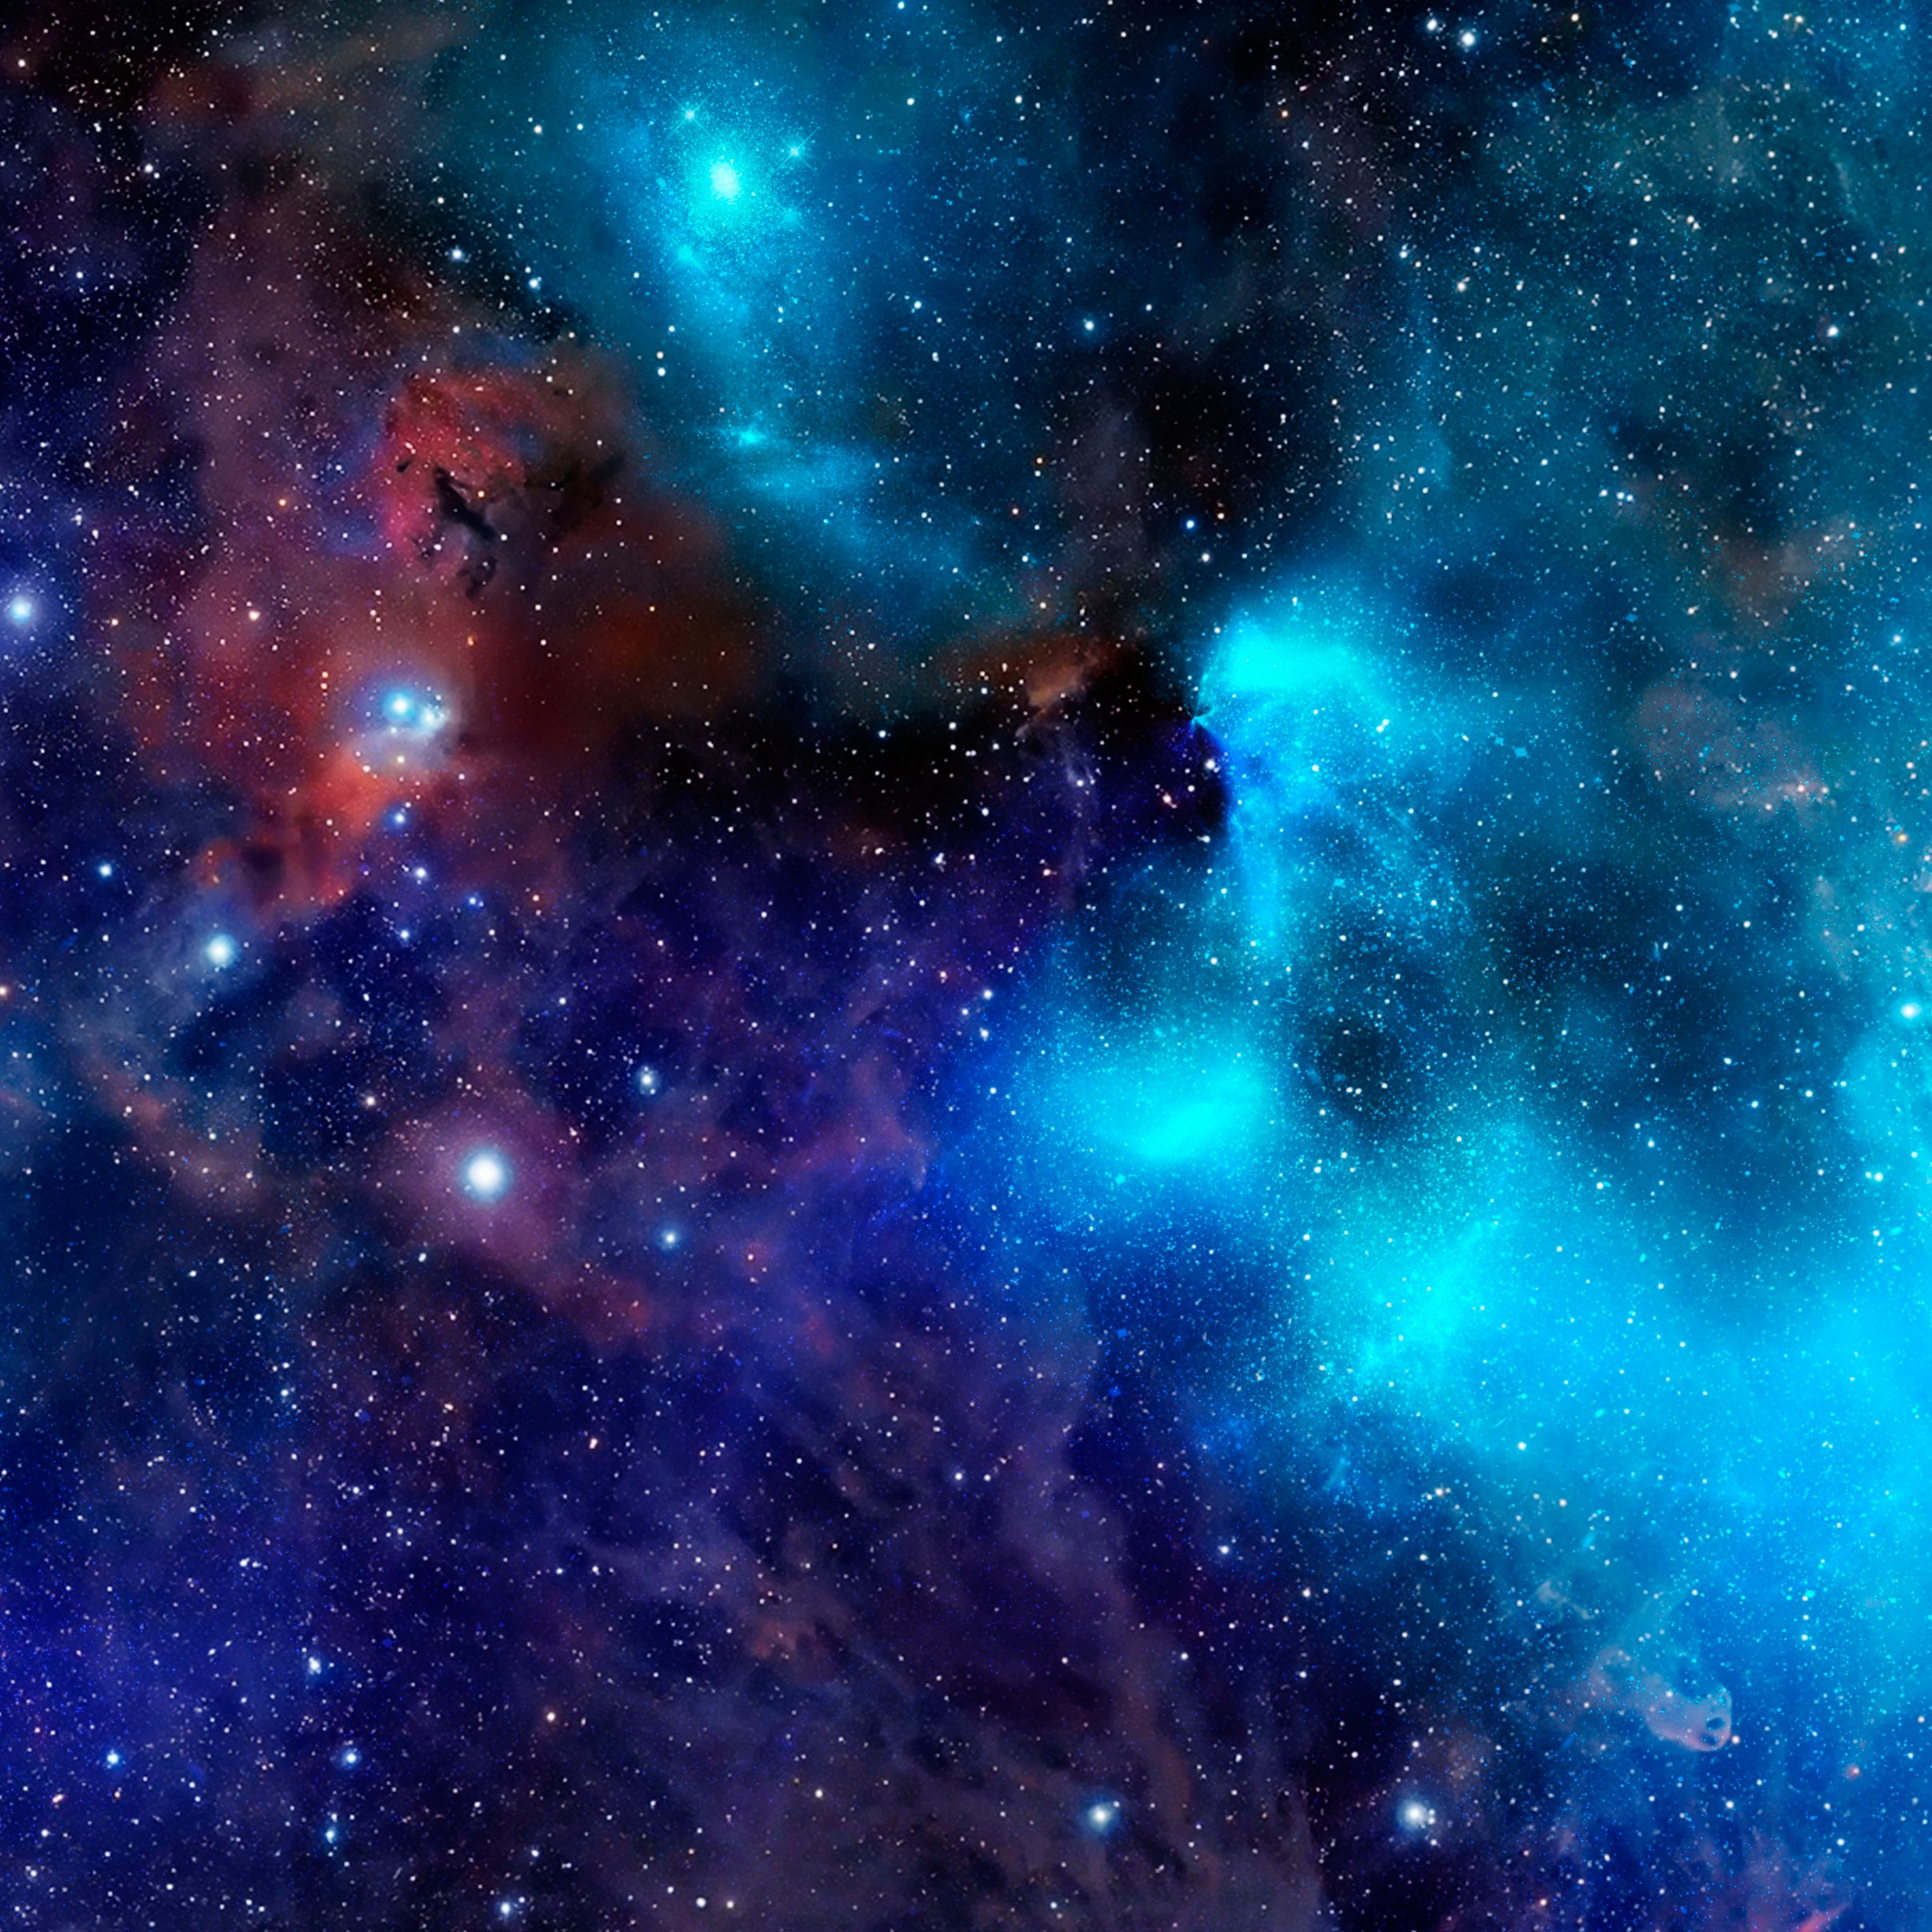 General 2448x2448 universe galaxy space stars digital art portrait display